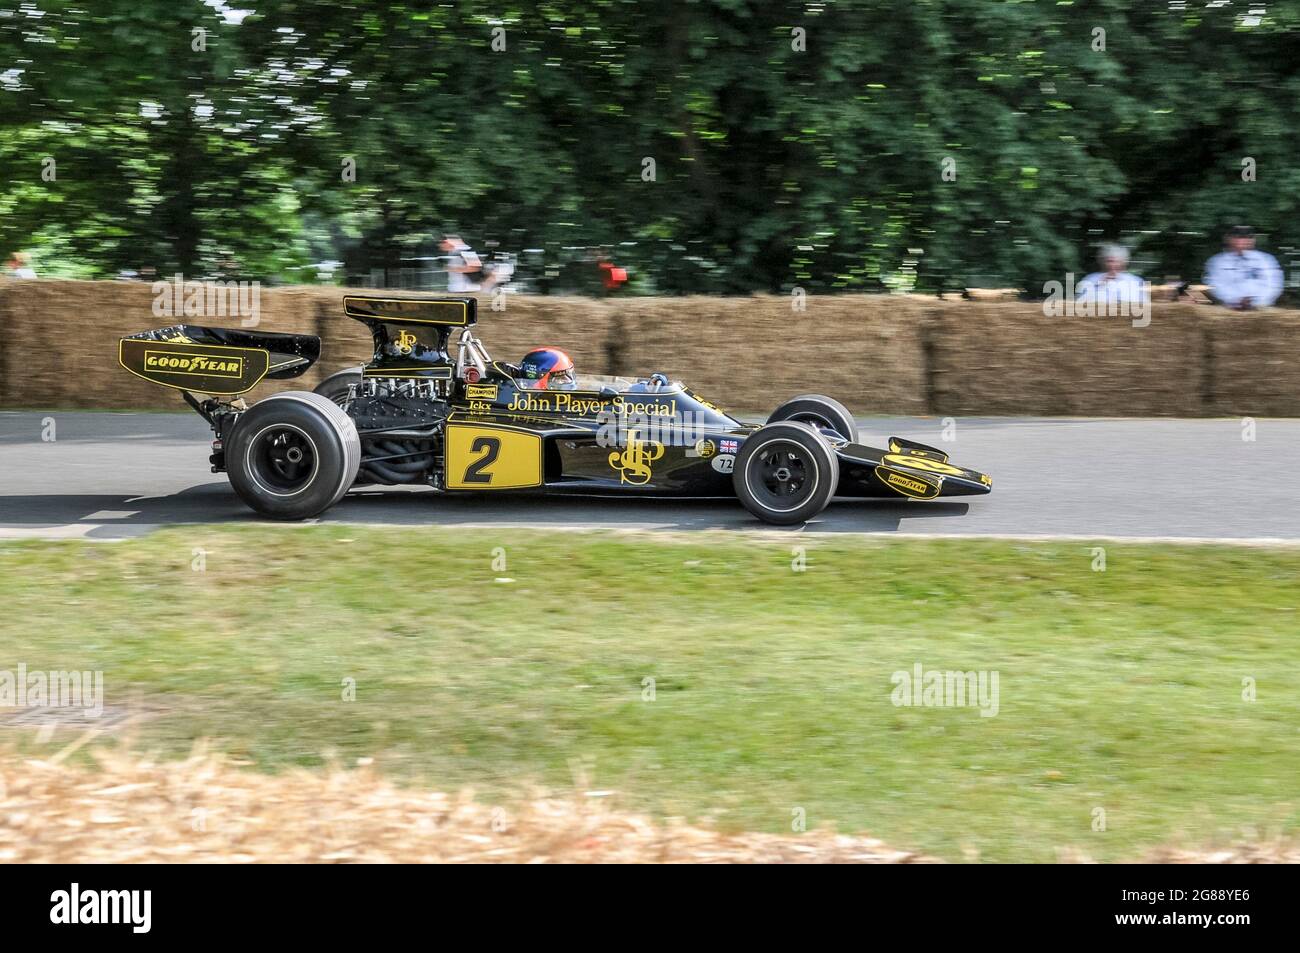 Lotus 72 Formule 1, voiture de course Grand Prix sur la colline au Goodwood Festival of Speed 2013. Voiture Jacky Ickx. Voiture de course F1 des années 1970 Banque D'Images